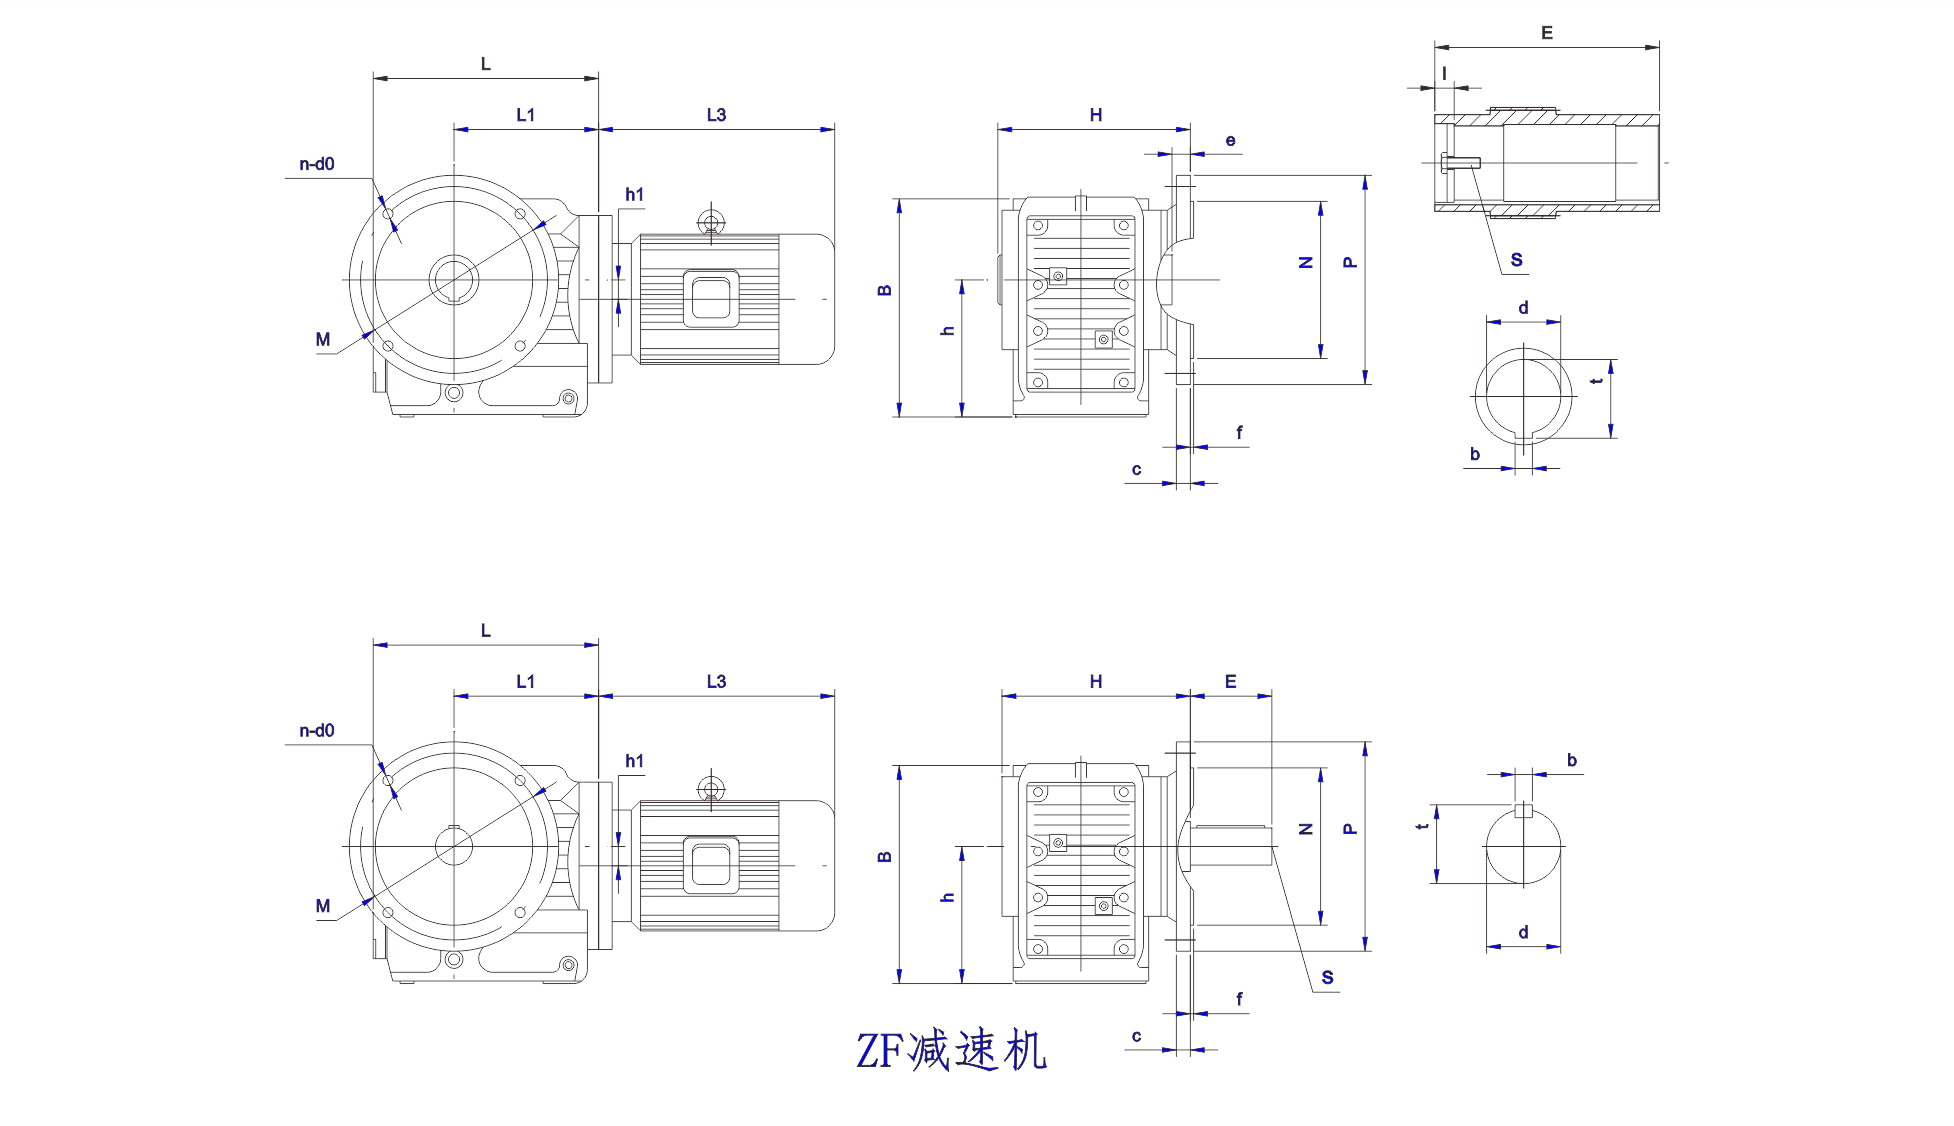   ZF系列正交轴齿轮减速机设计图